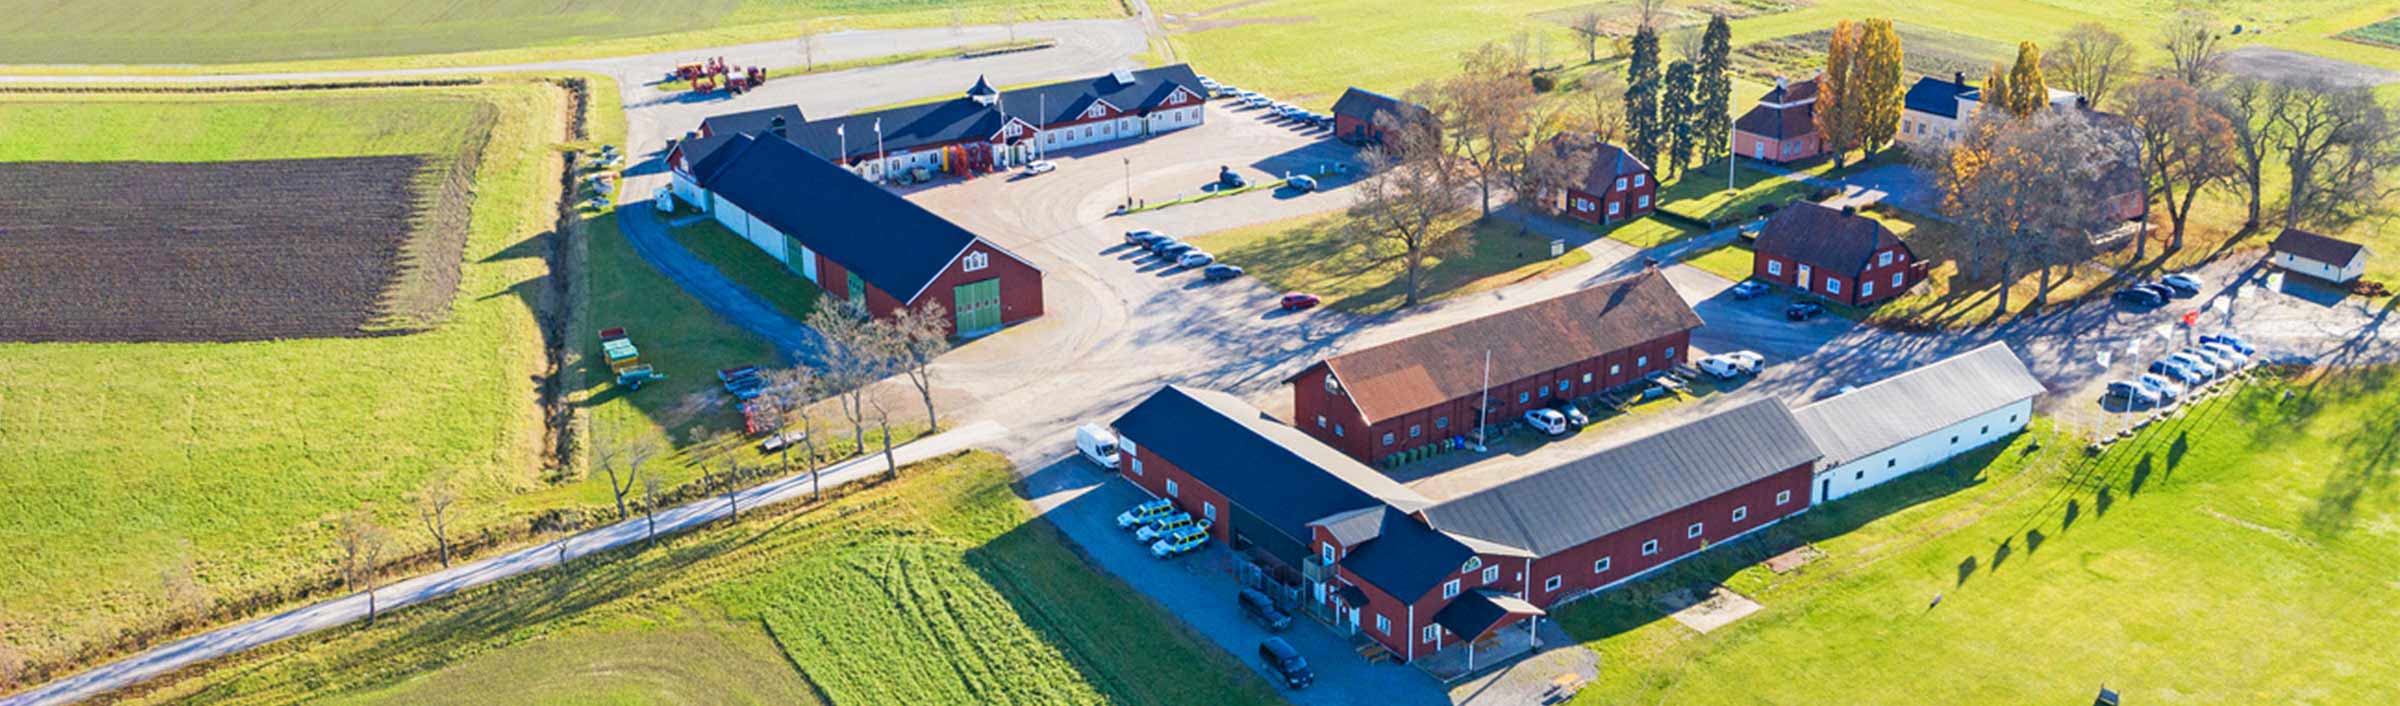 Aerial view of Brunnby Gård